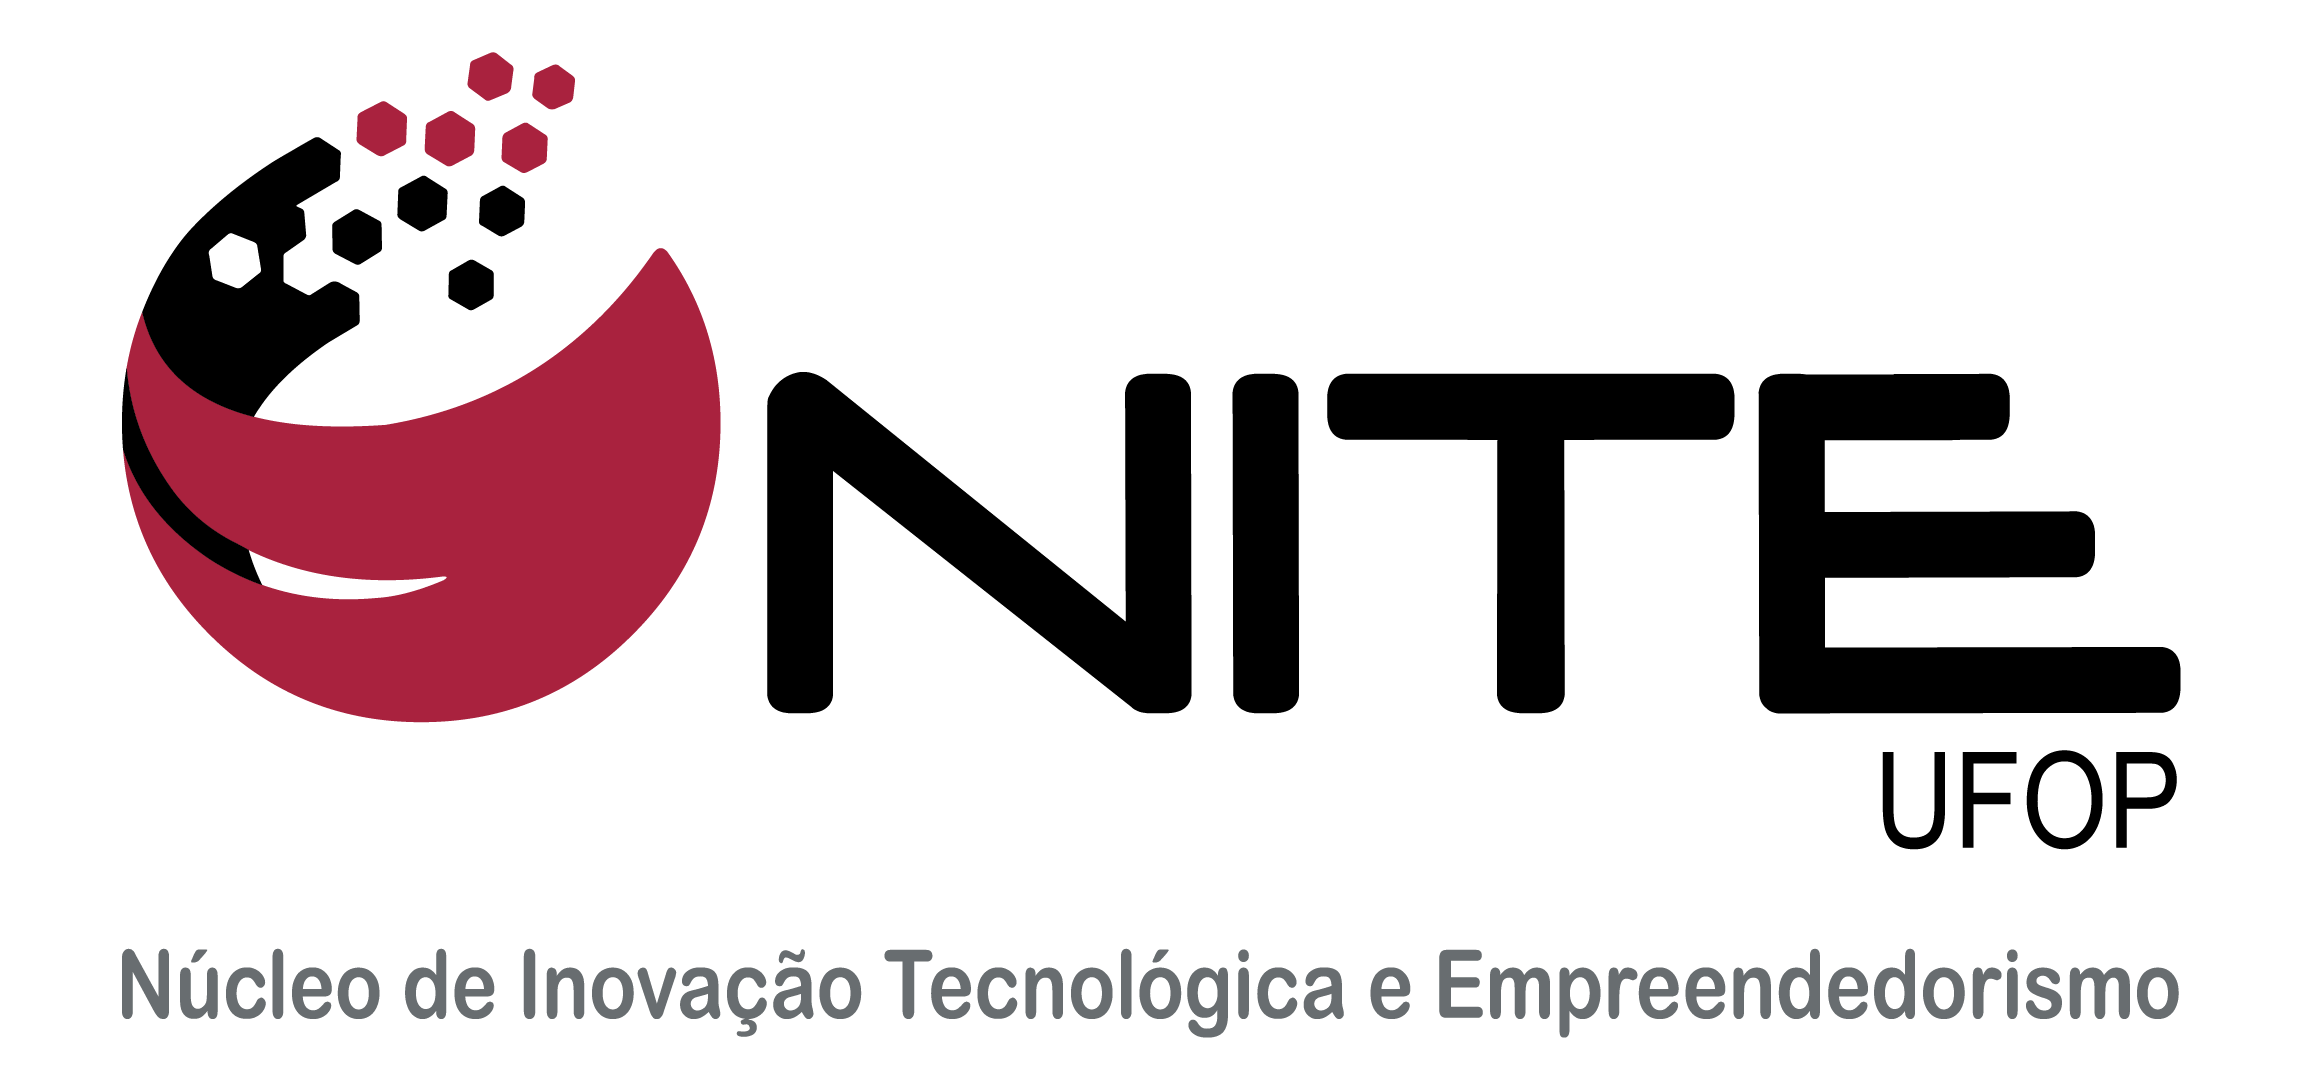 Center of Technological Innovation and Entrepreneurship - NITE